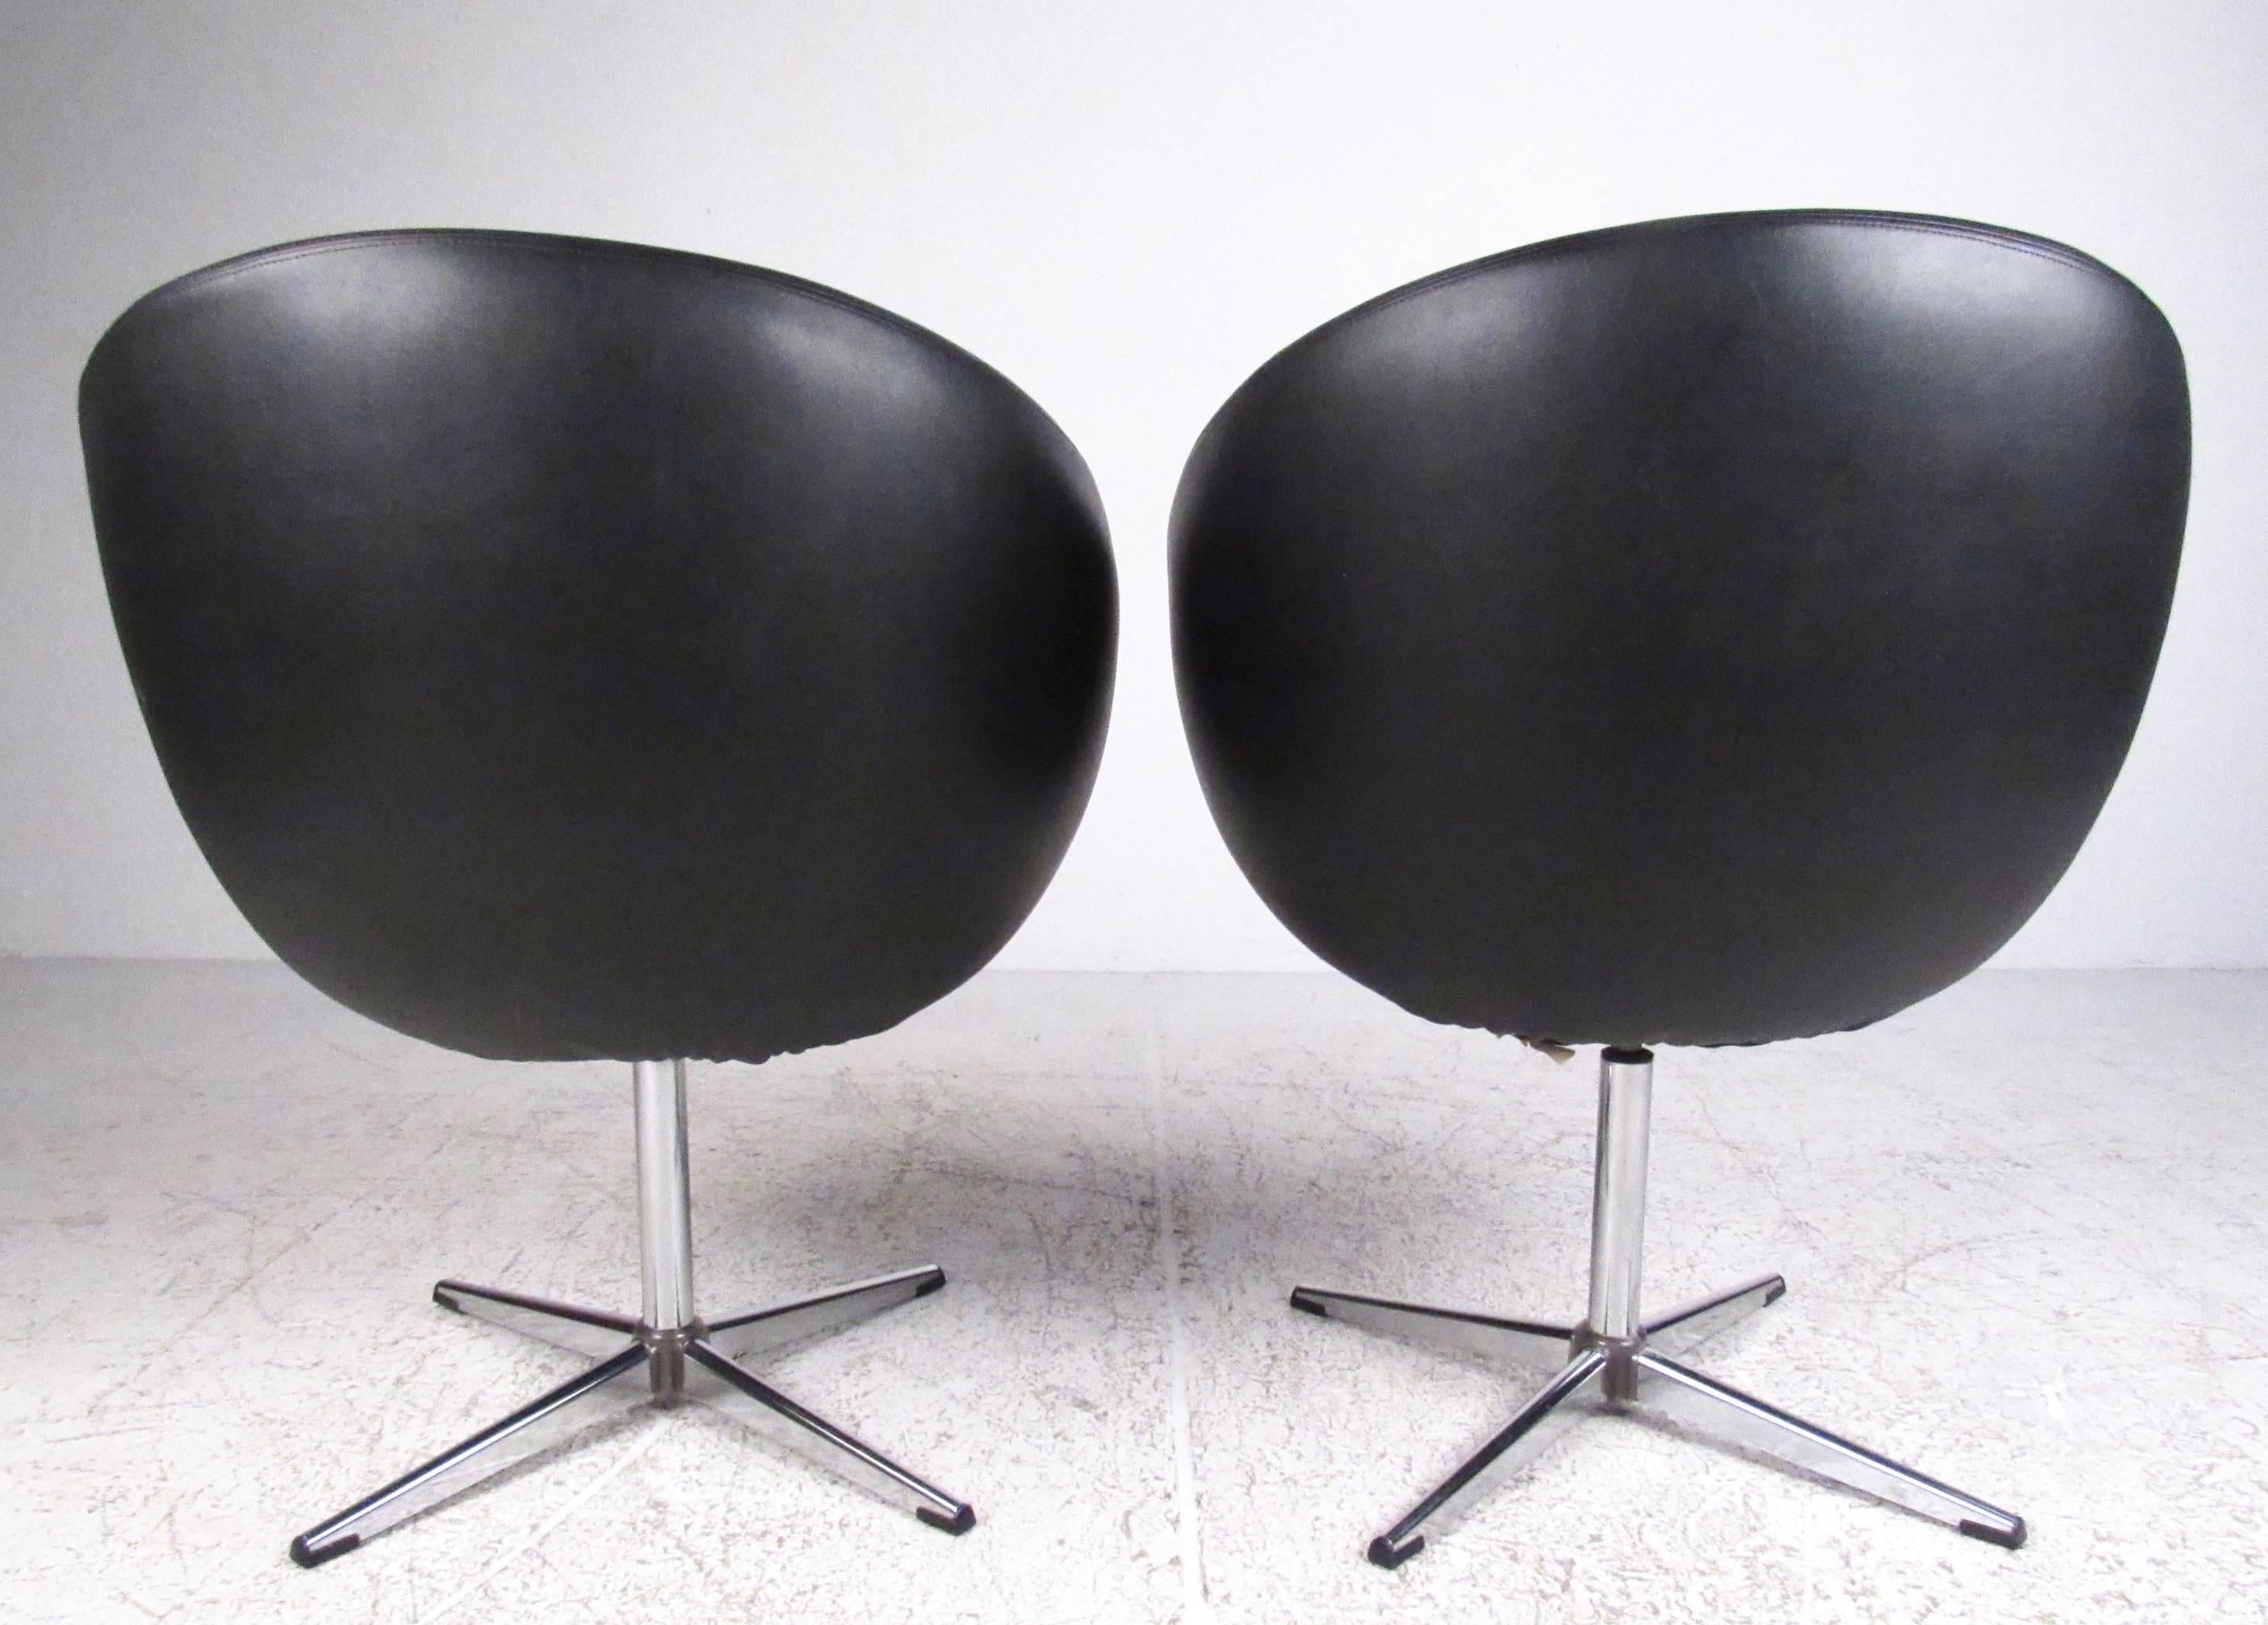 Dieses ikonische Paar von Overman-Pod-Stühlen verfügt über drehbare Sitze auf einem stabilen verchromten 